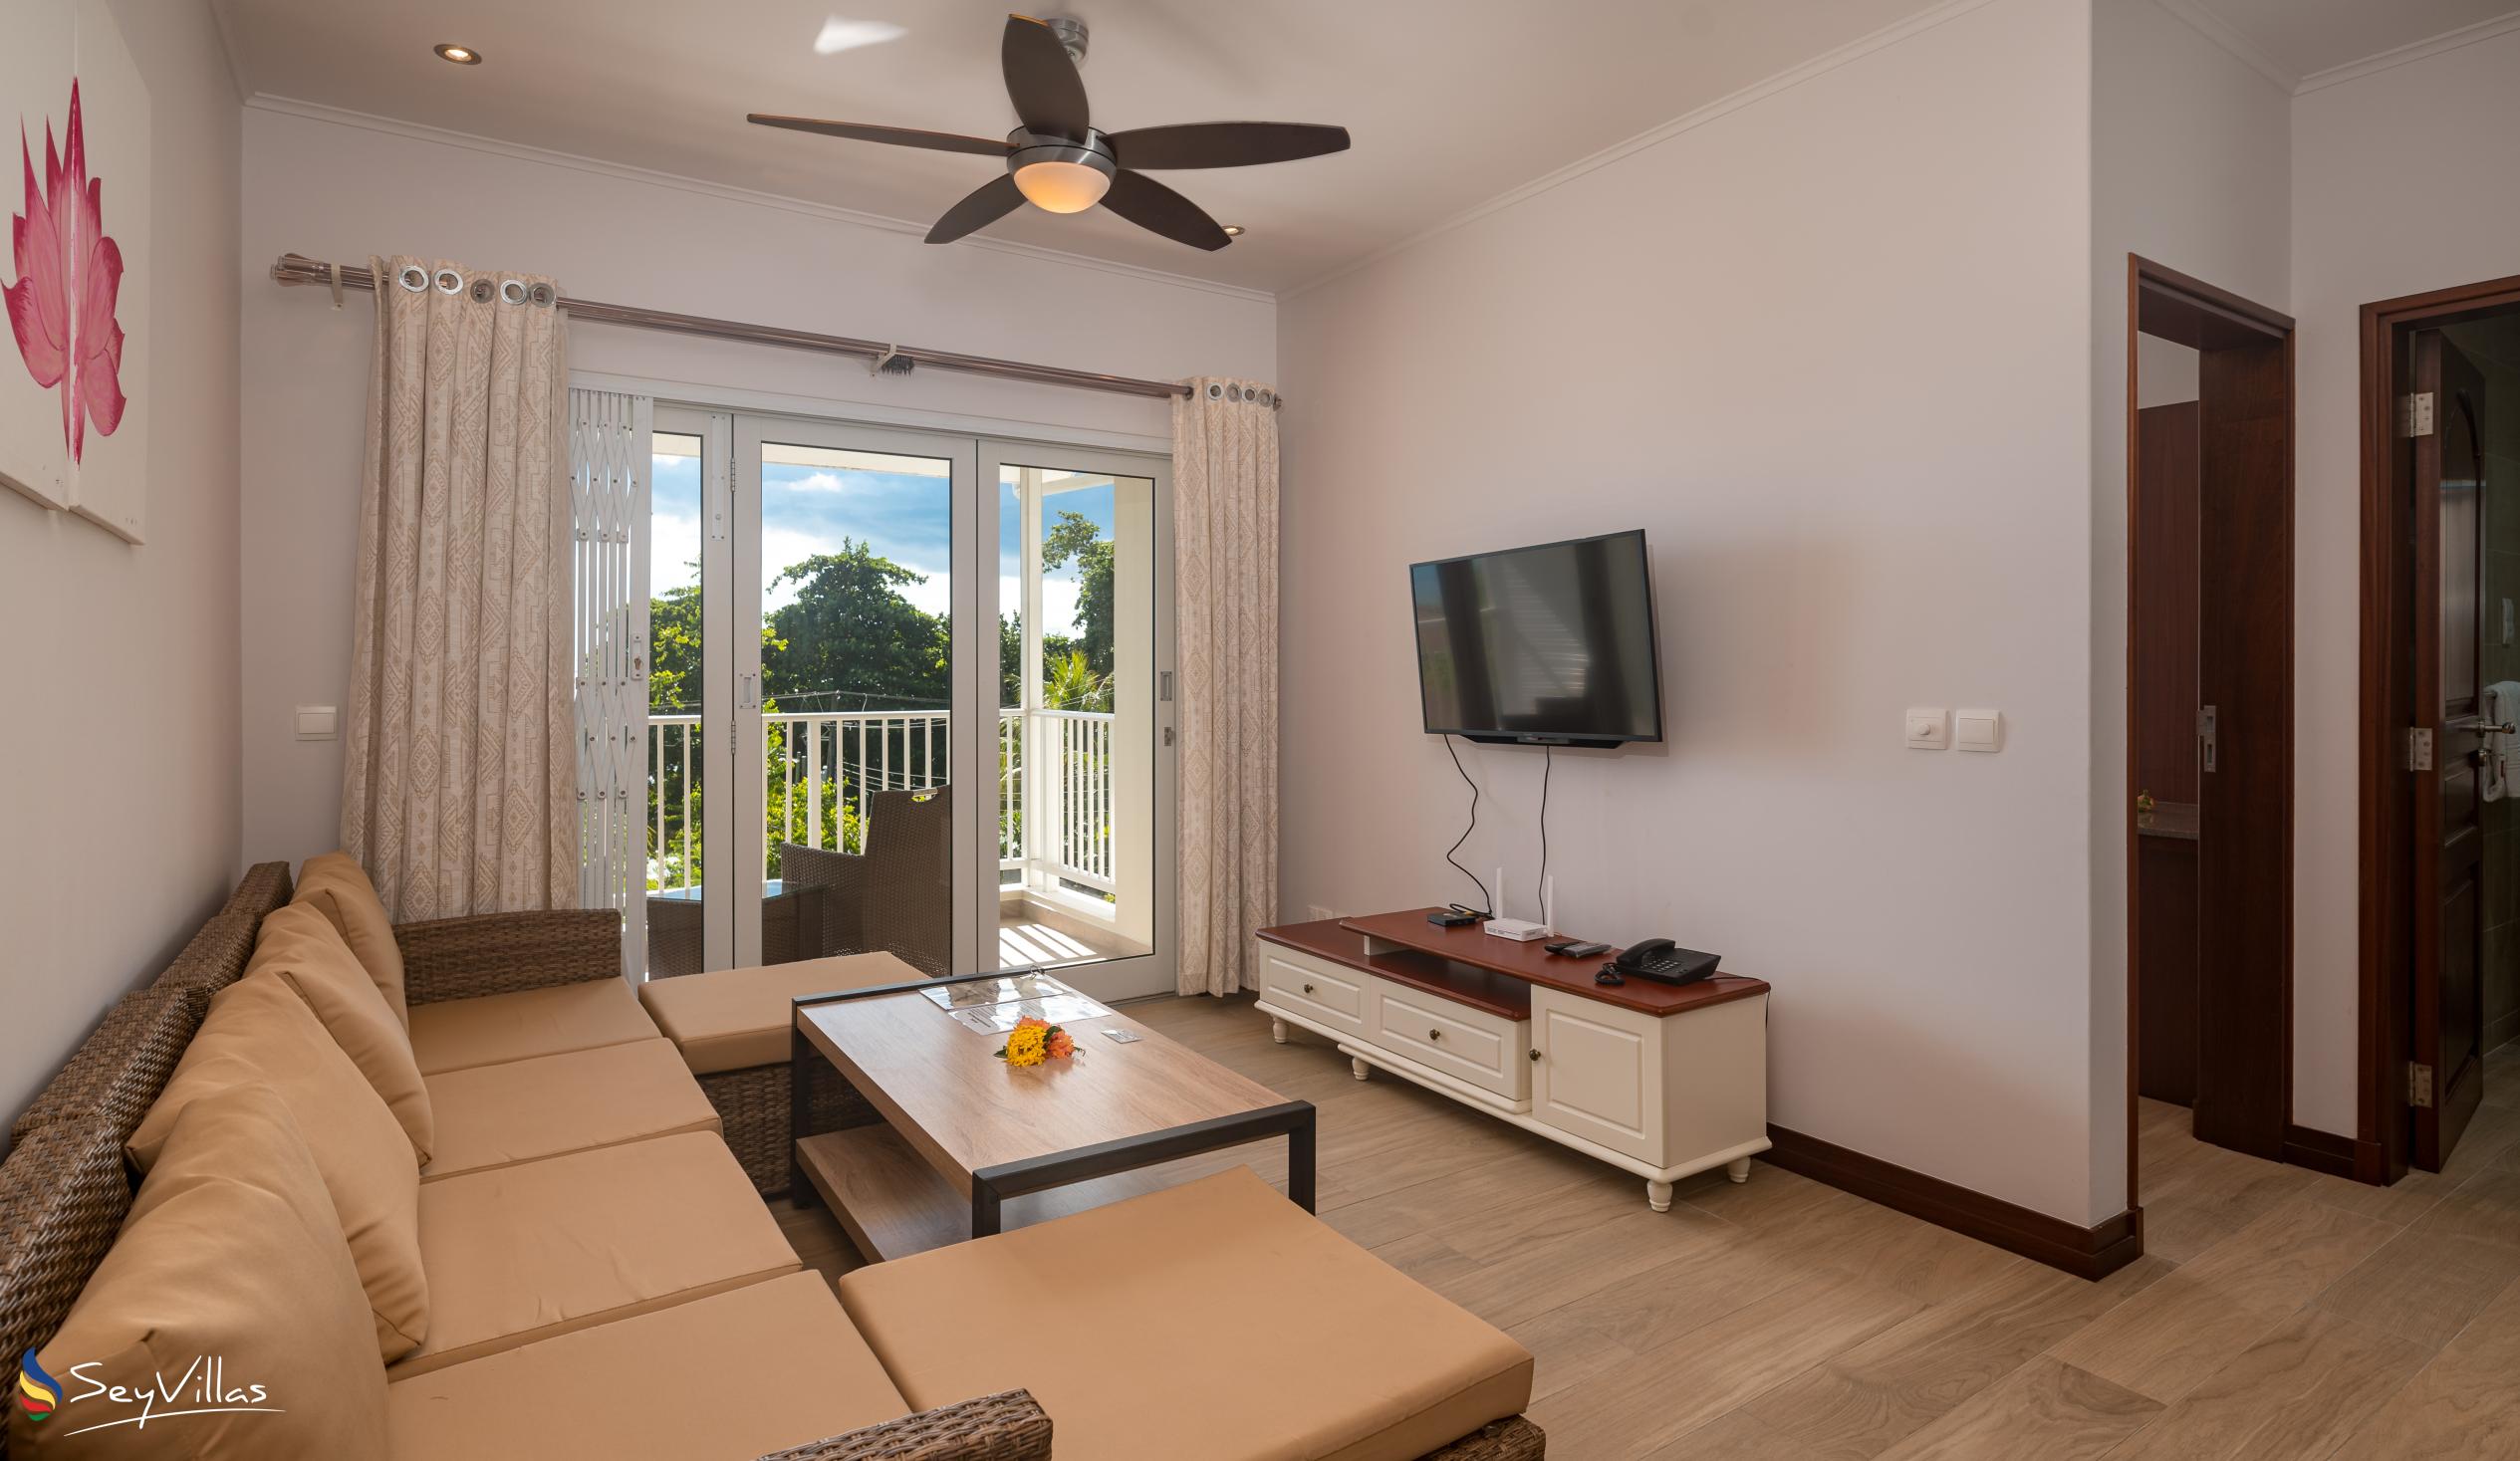 Foto 35: Crystal Shores Self Catering Apartments - Appartement avec vue sur la mer - Mahé (Seychelles)